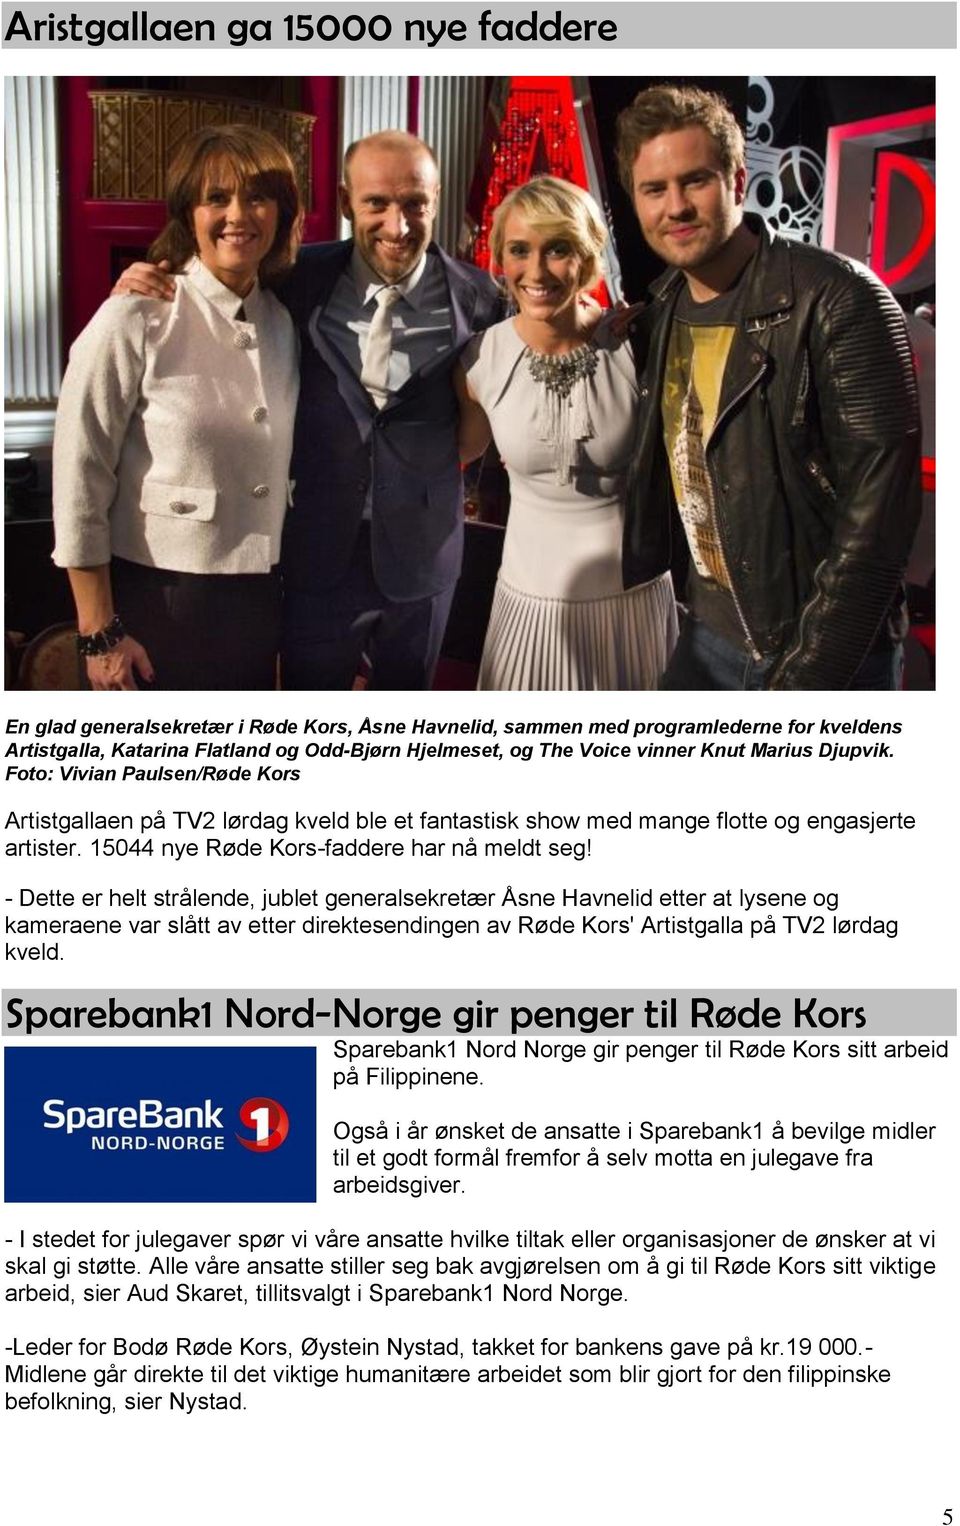 - Dette er helt strålende, jublet generalsekretær Åsne Havnelid etter at lysene og kameraene var slått av etter direktesendingen av Røde Kors' Artistgalla på TV2 lørdag kveld.